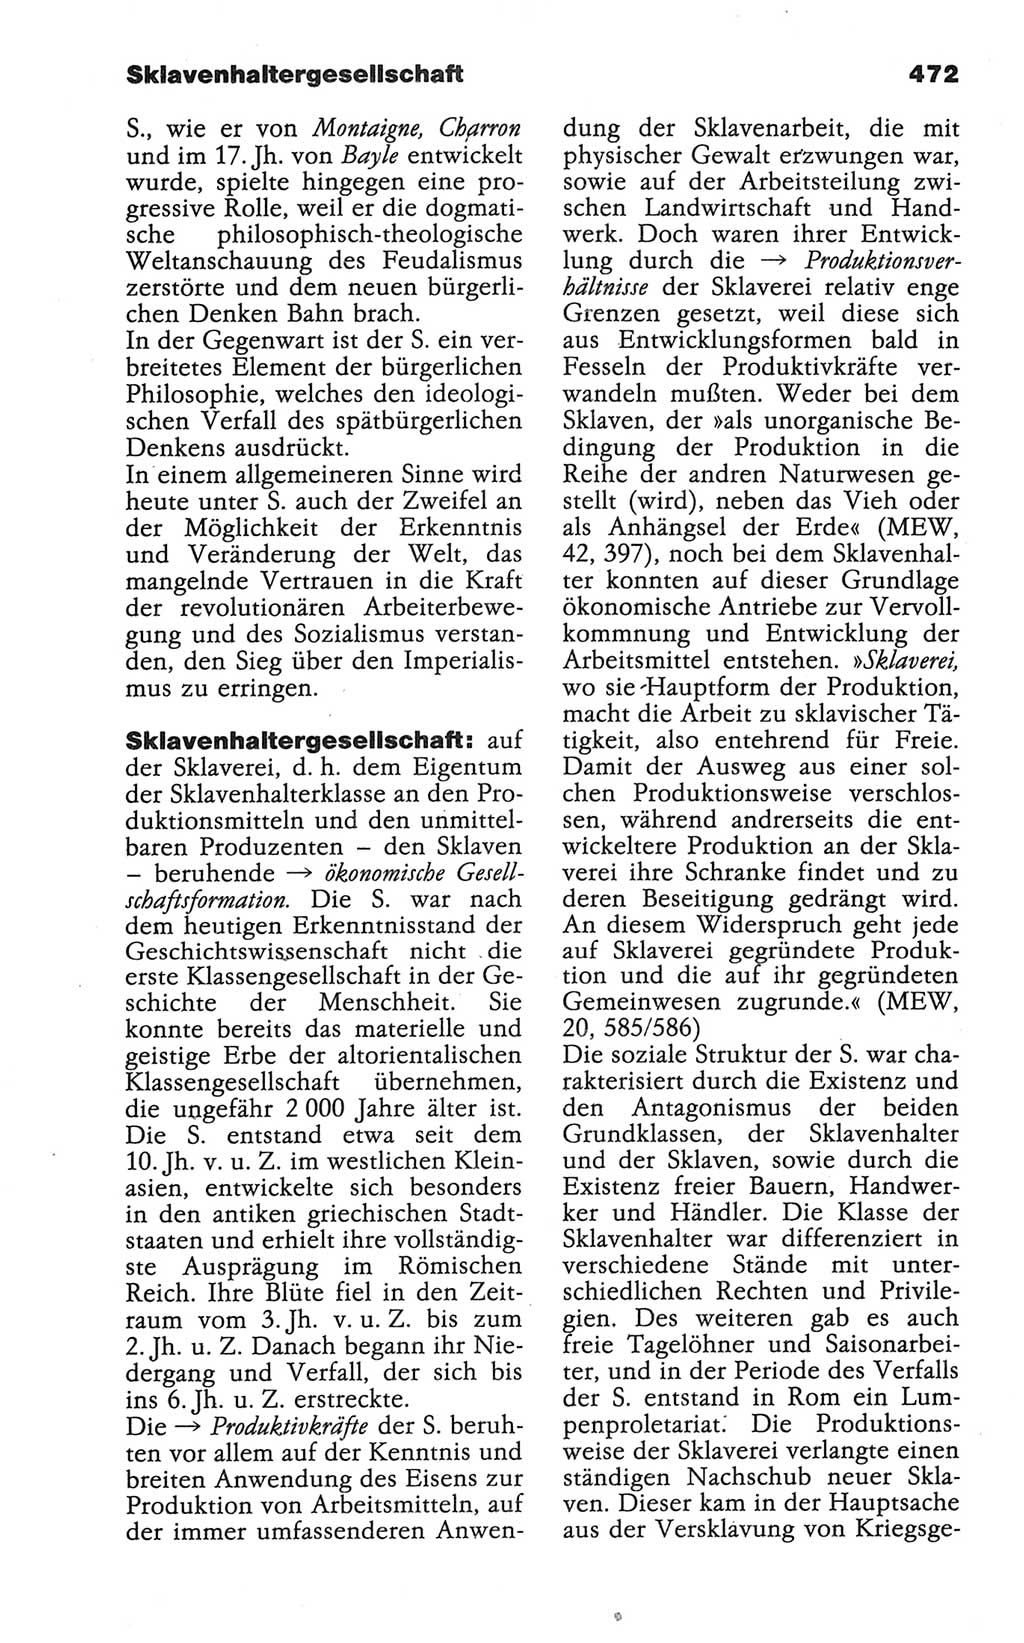 Wörterbuch der marxistisch-leninistischen Philosophie [Deutsche Demokratische Republik (DDR)] 1986, Seite 472 (Wb. ML Phil. DDR 1986, S. 472)